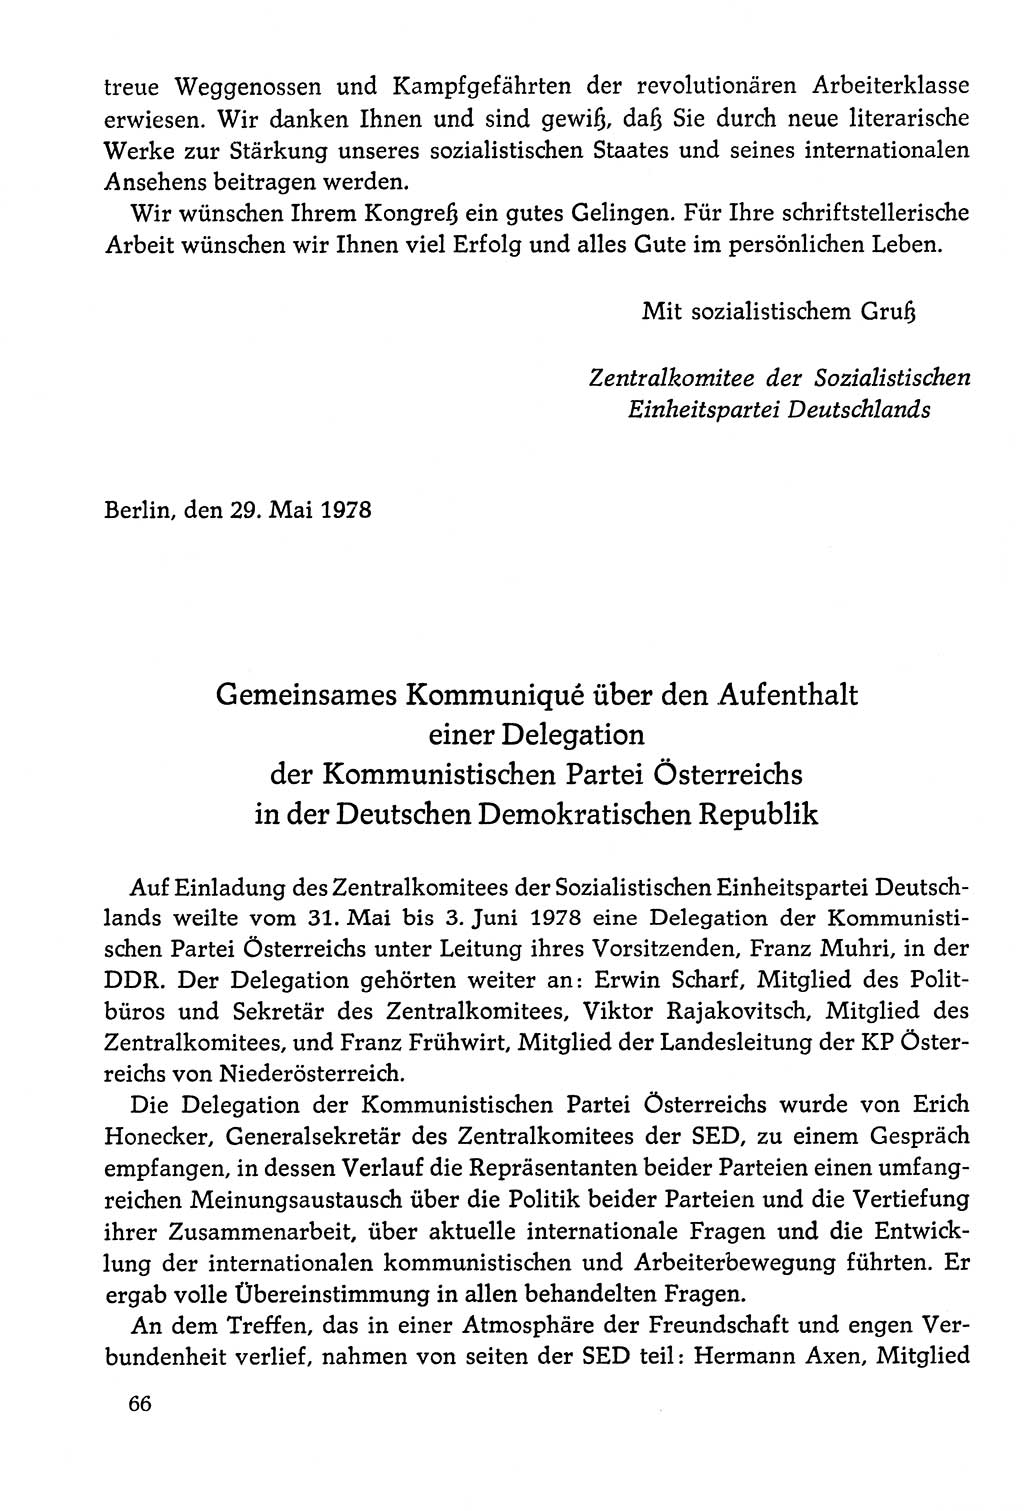 Dokumente der Sozialistischen Einheitspartei Deutschlands (SED) [Deutsche Demokratische Republik (DDR)] 1978-1979, Seite 66 (Dok. SED DDR 1978-1979, S. 66)